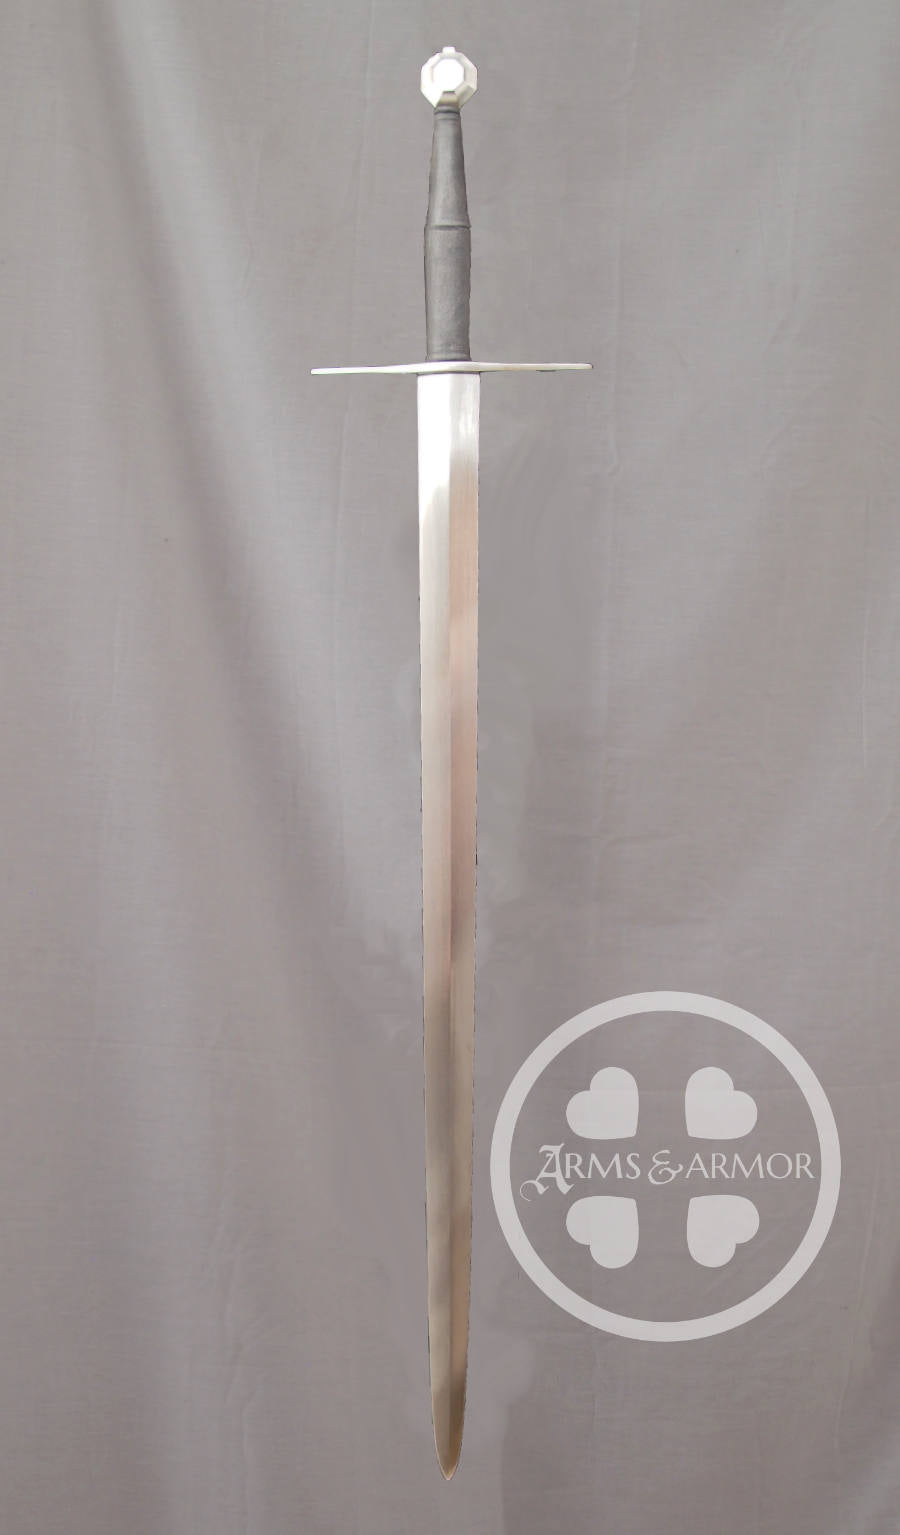 Knightly Bastard Sword